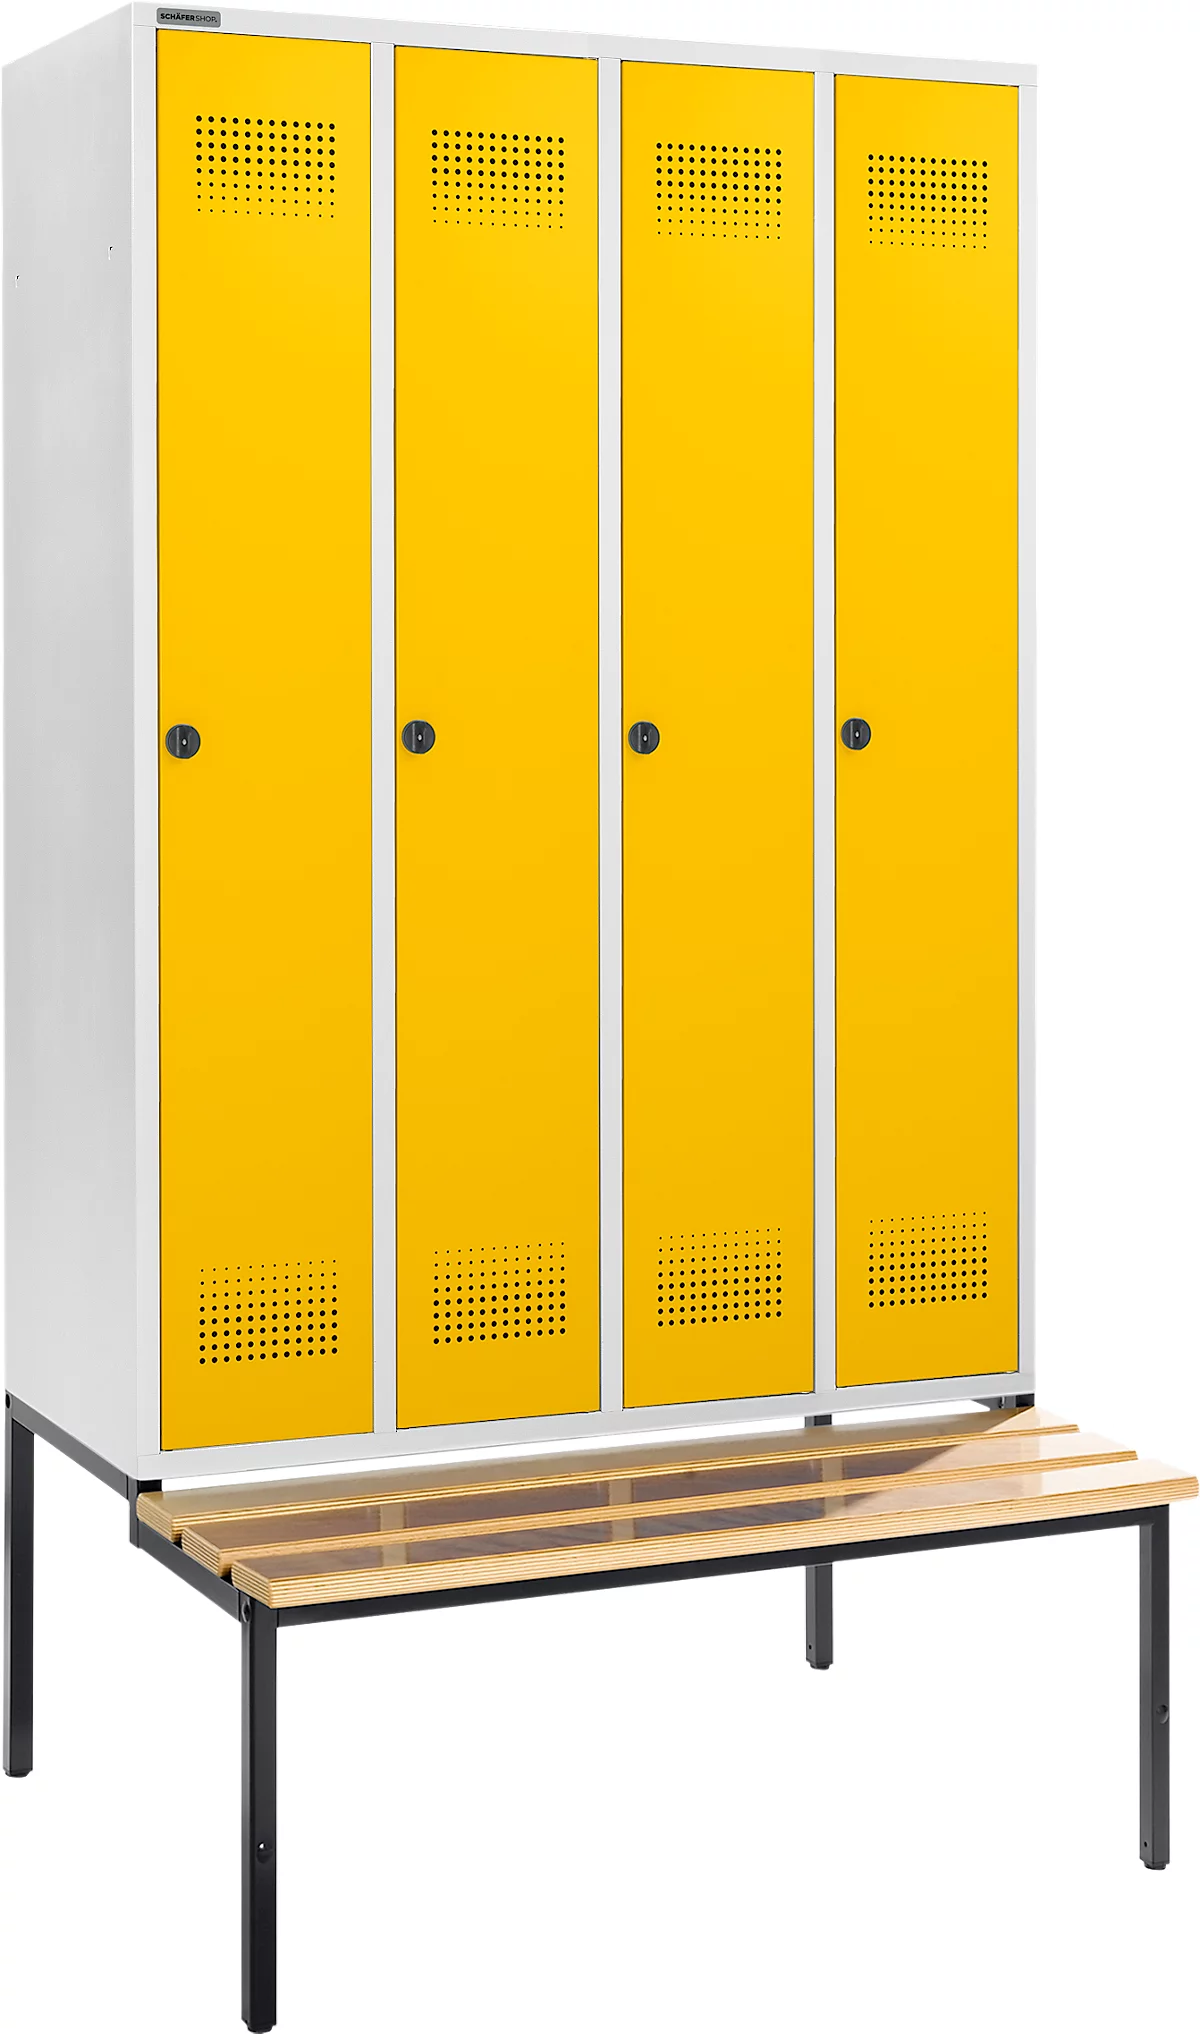 Schäfer Shop Genius Taquilla con banco, 4 compartimentos, anchura compartimento 300 mm, cierre de pasador giratorio de seguridad, gris luminoso/amarillo